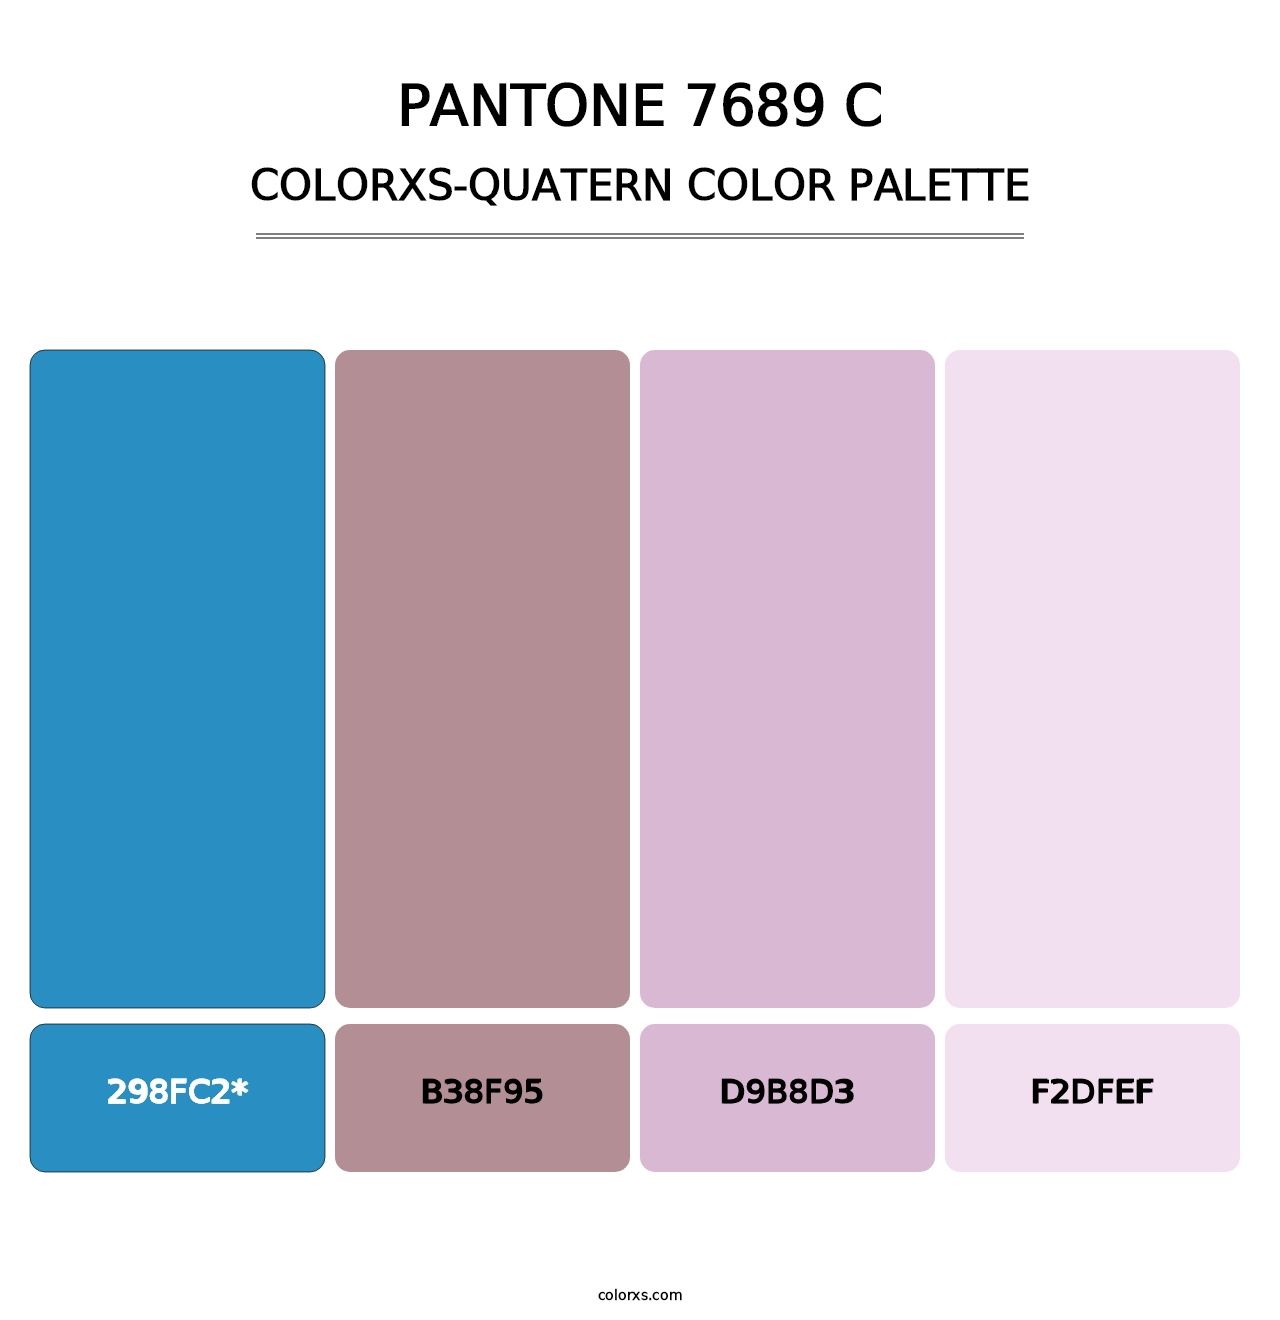 PANTONE 7689 C - Colorxs Quatern Palette